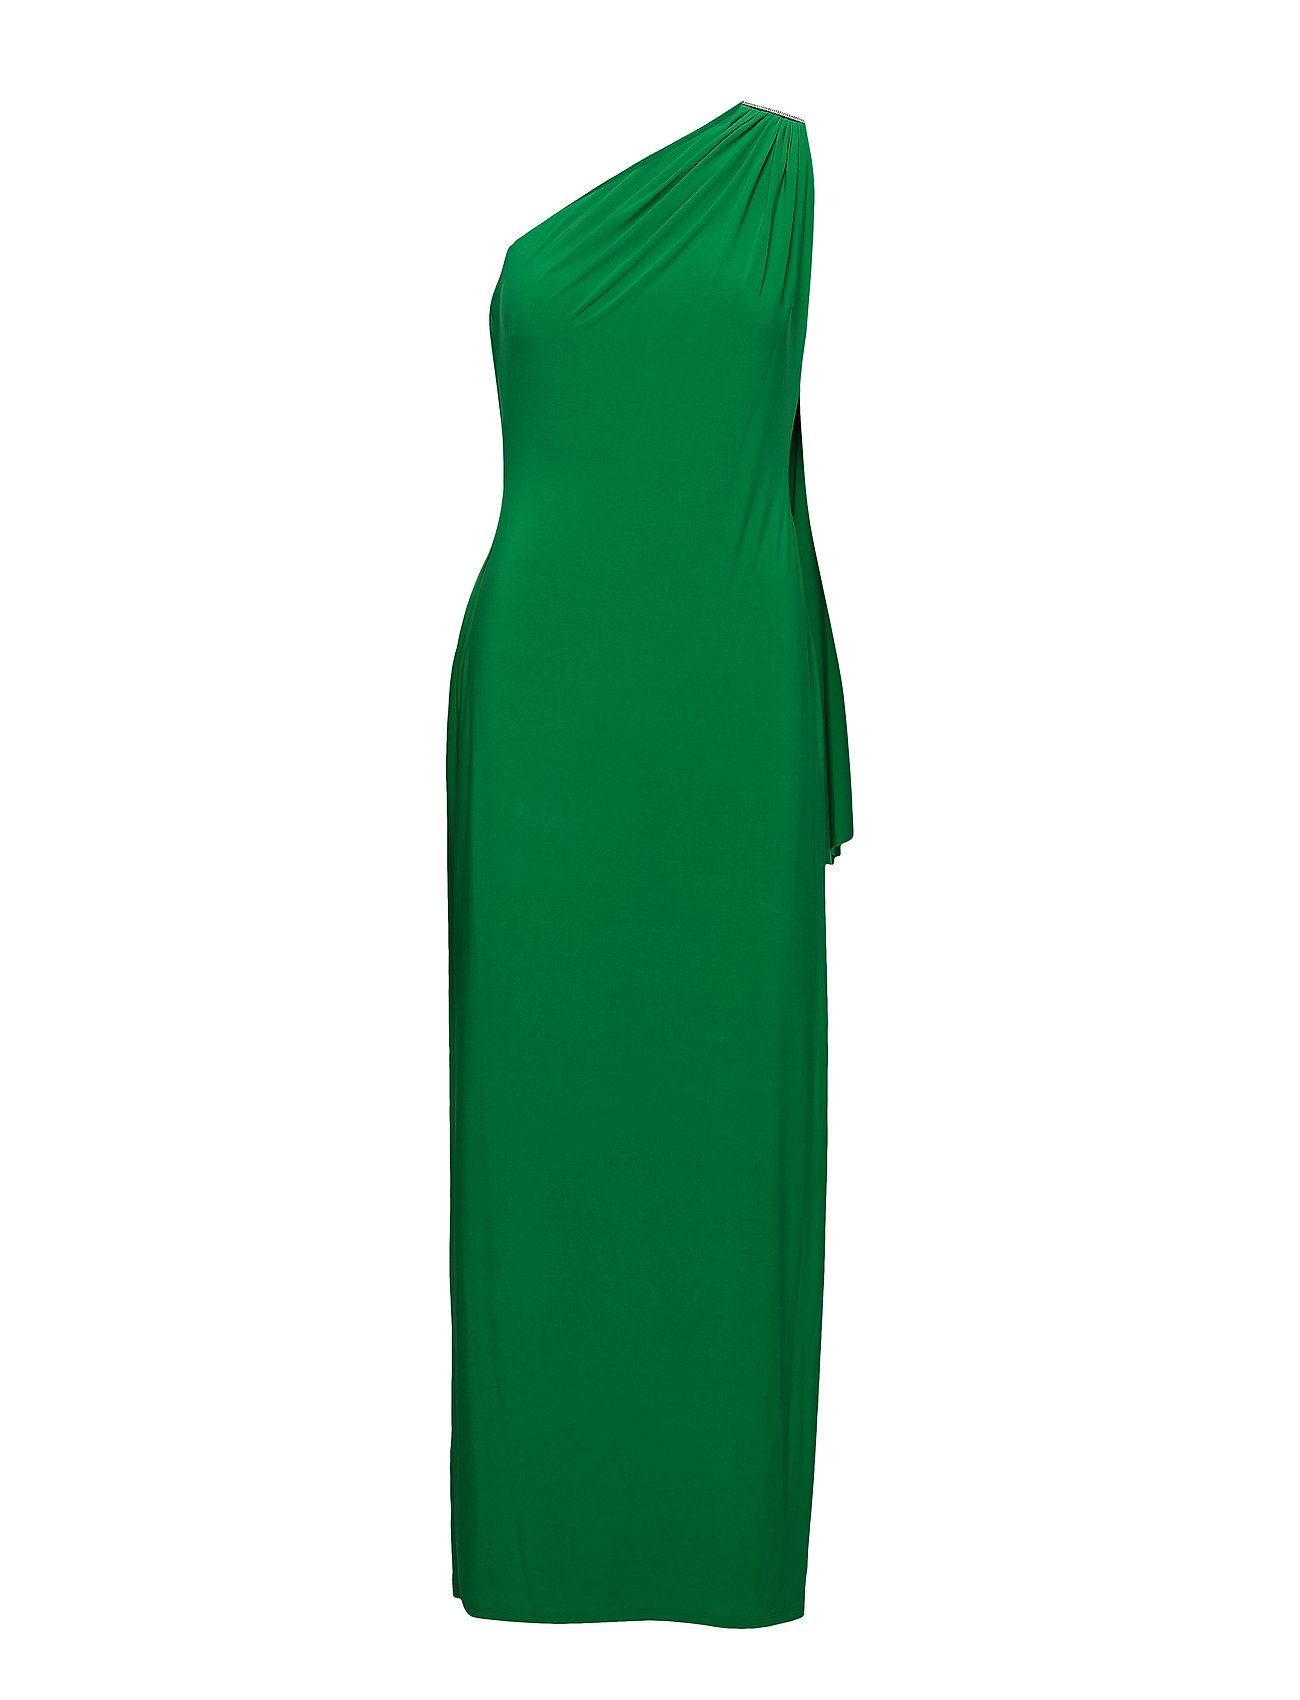 lauren ralph lauren green dress